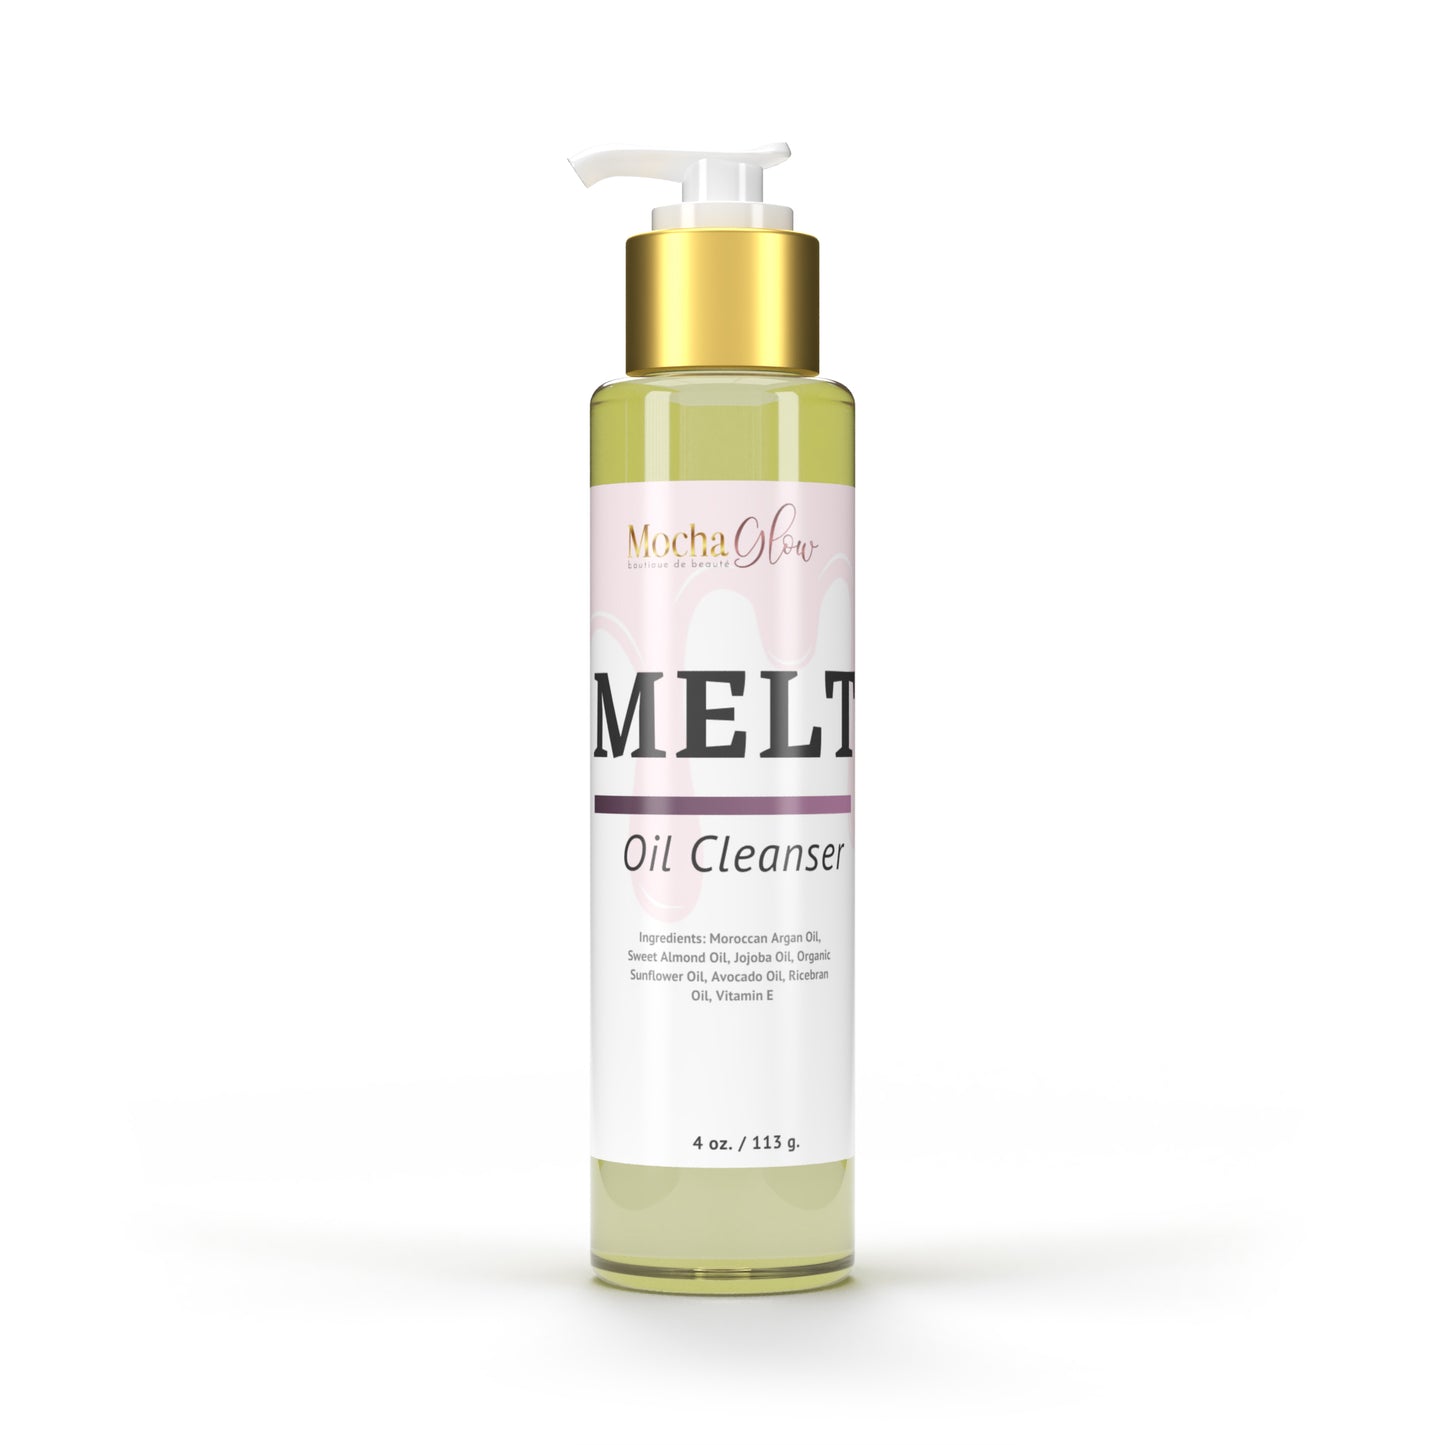 “MELT” Oil Cleanser - Sunscreen & Make Up Remover